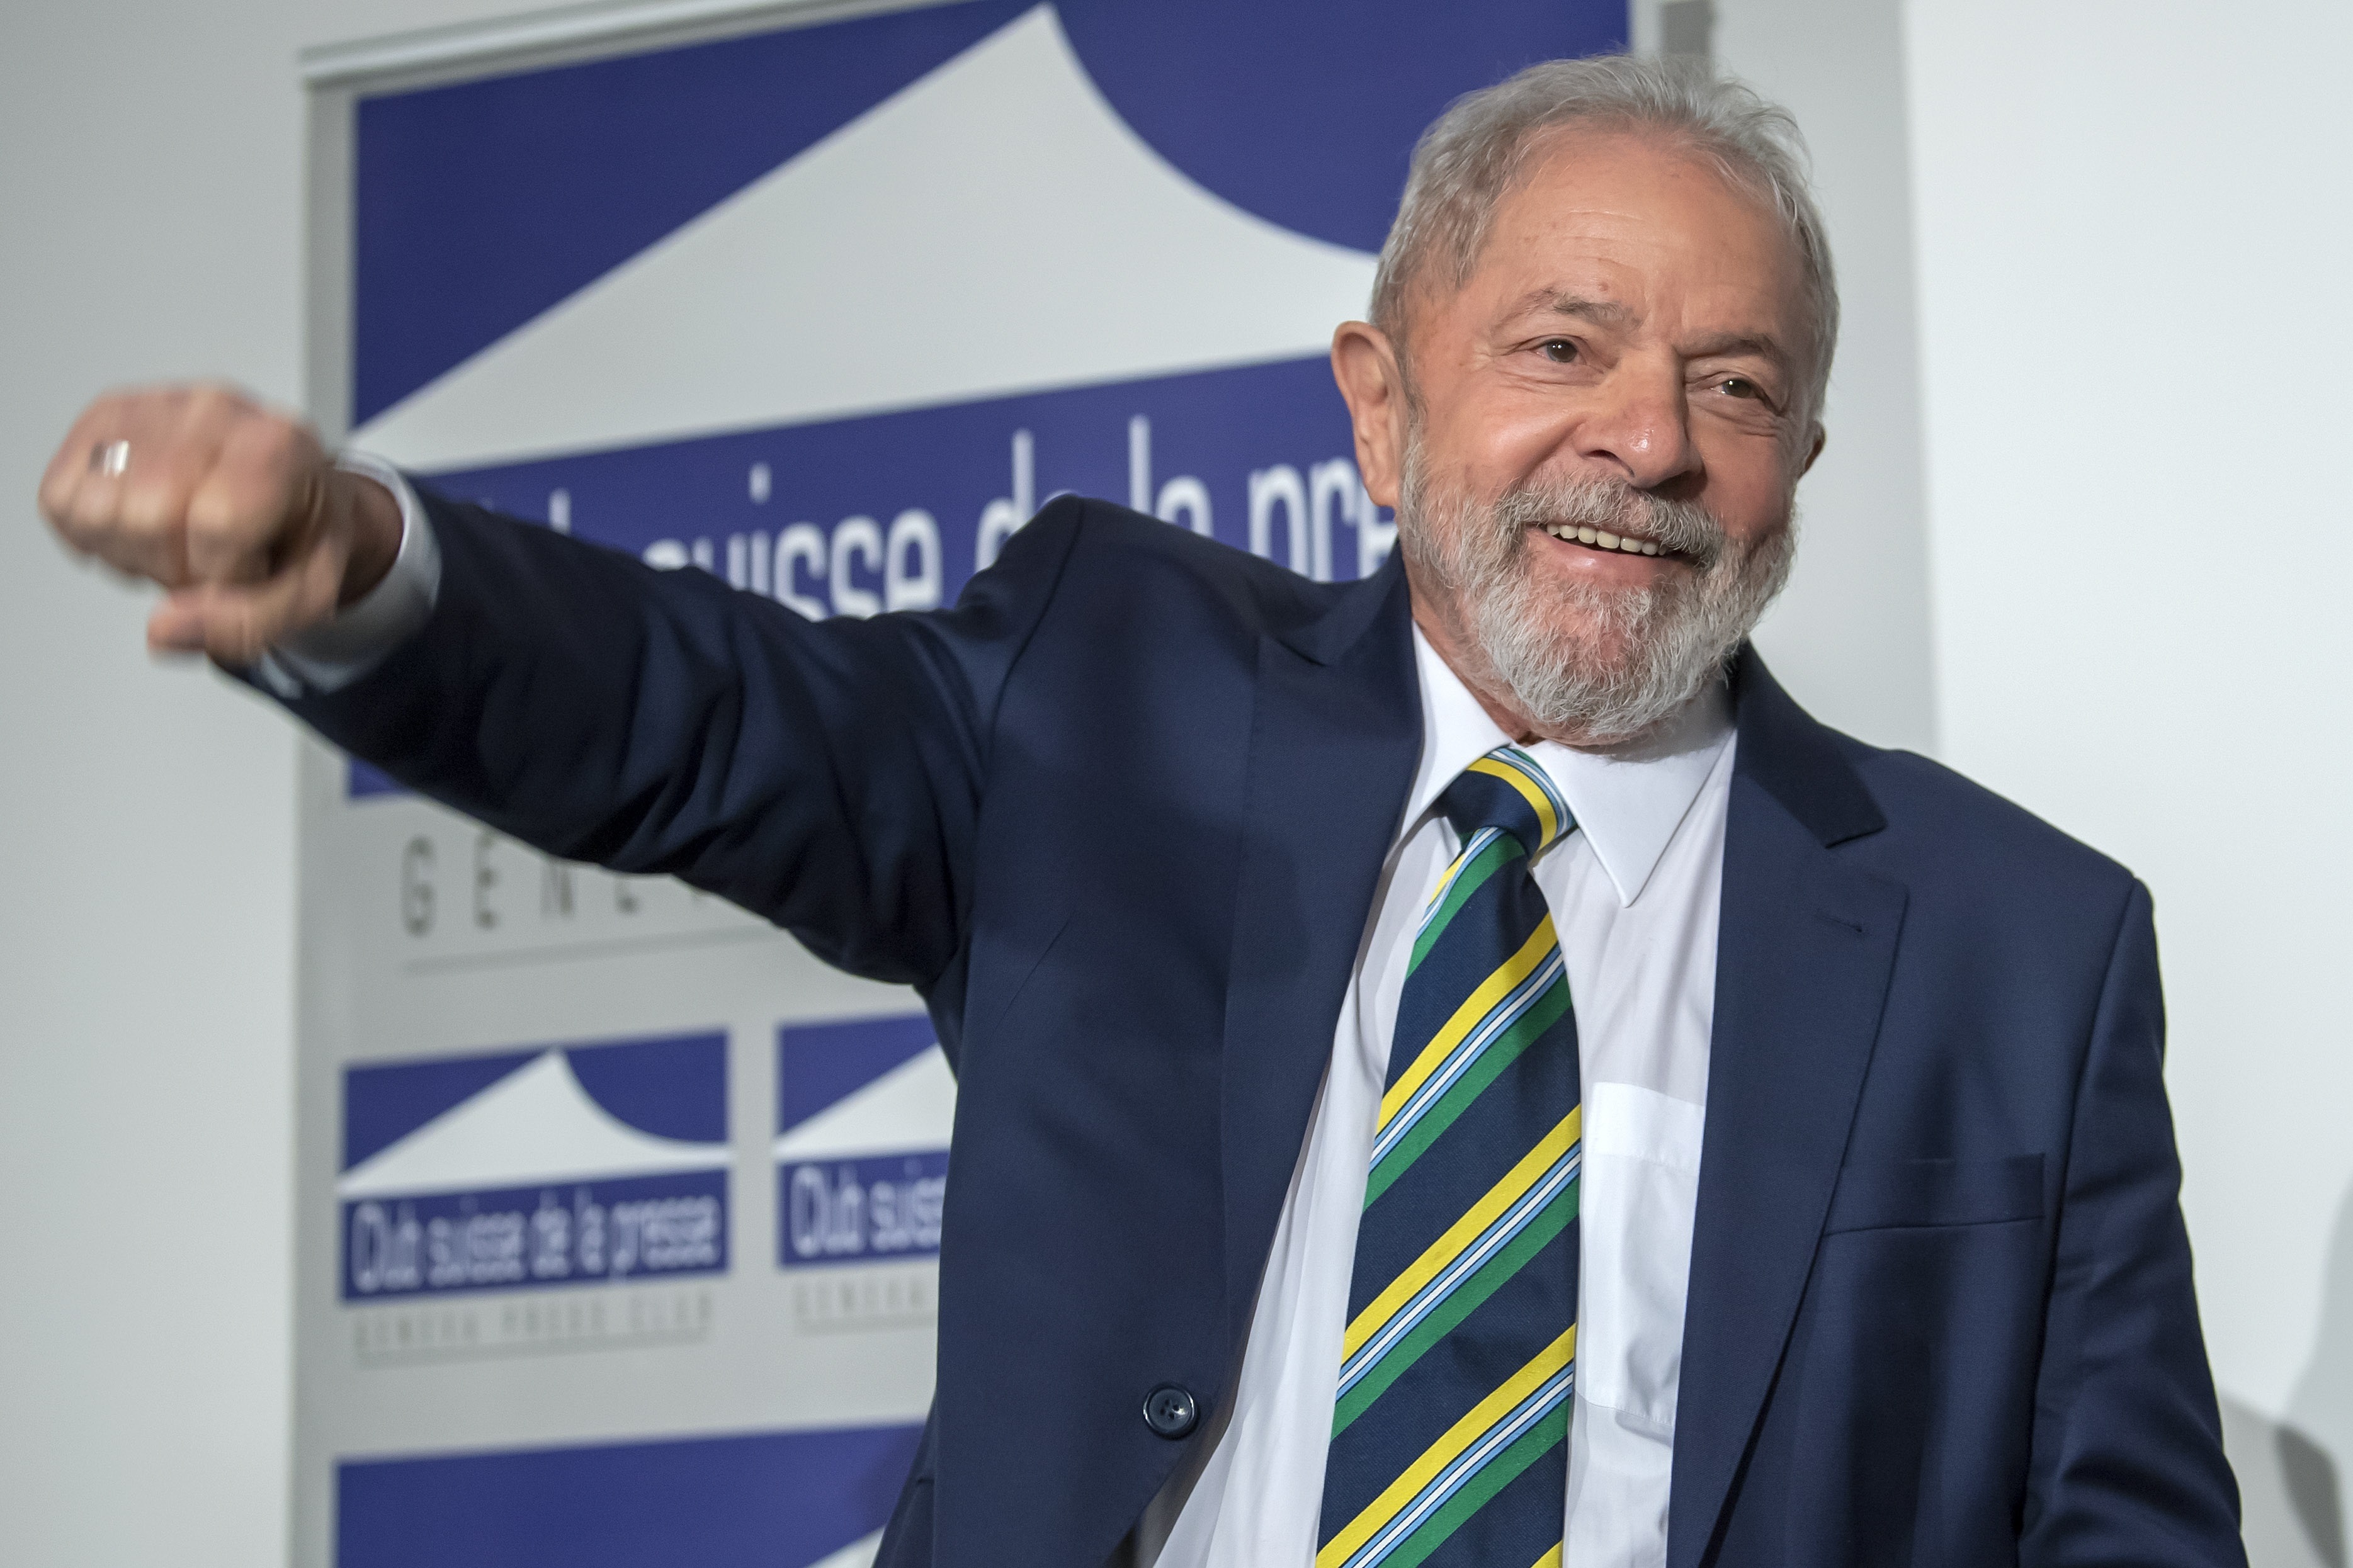 En la imagen, el expresidente brasileño Luiz Inácio Lula da Silva. EFE/Martial Trezzini/Archivo
